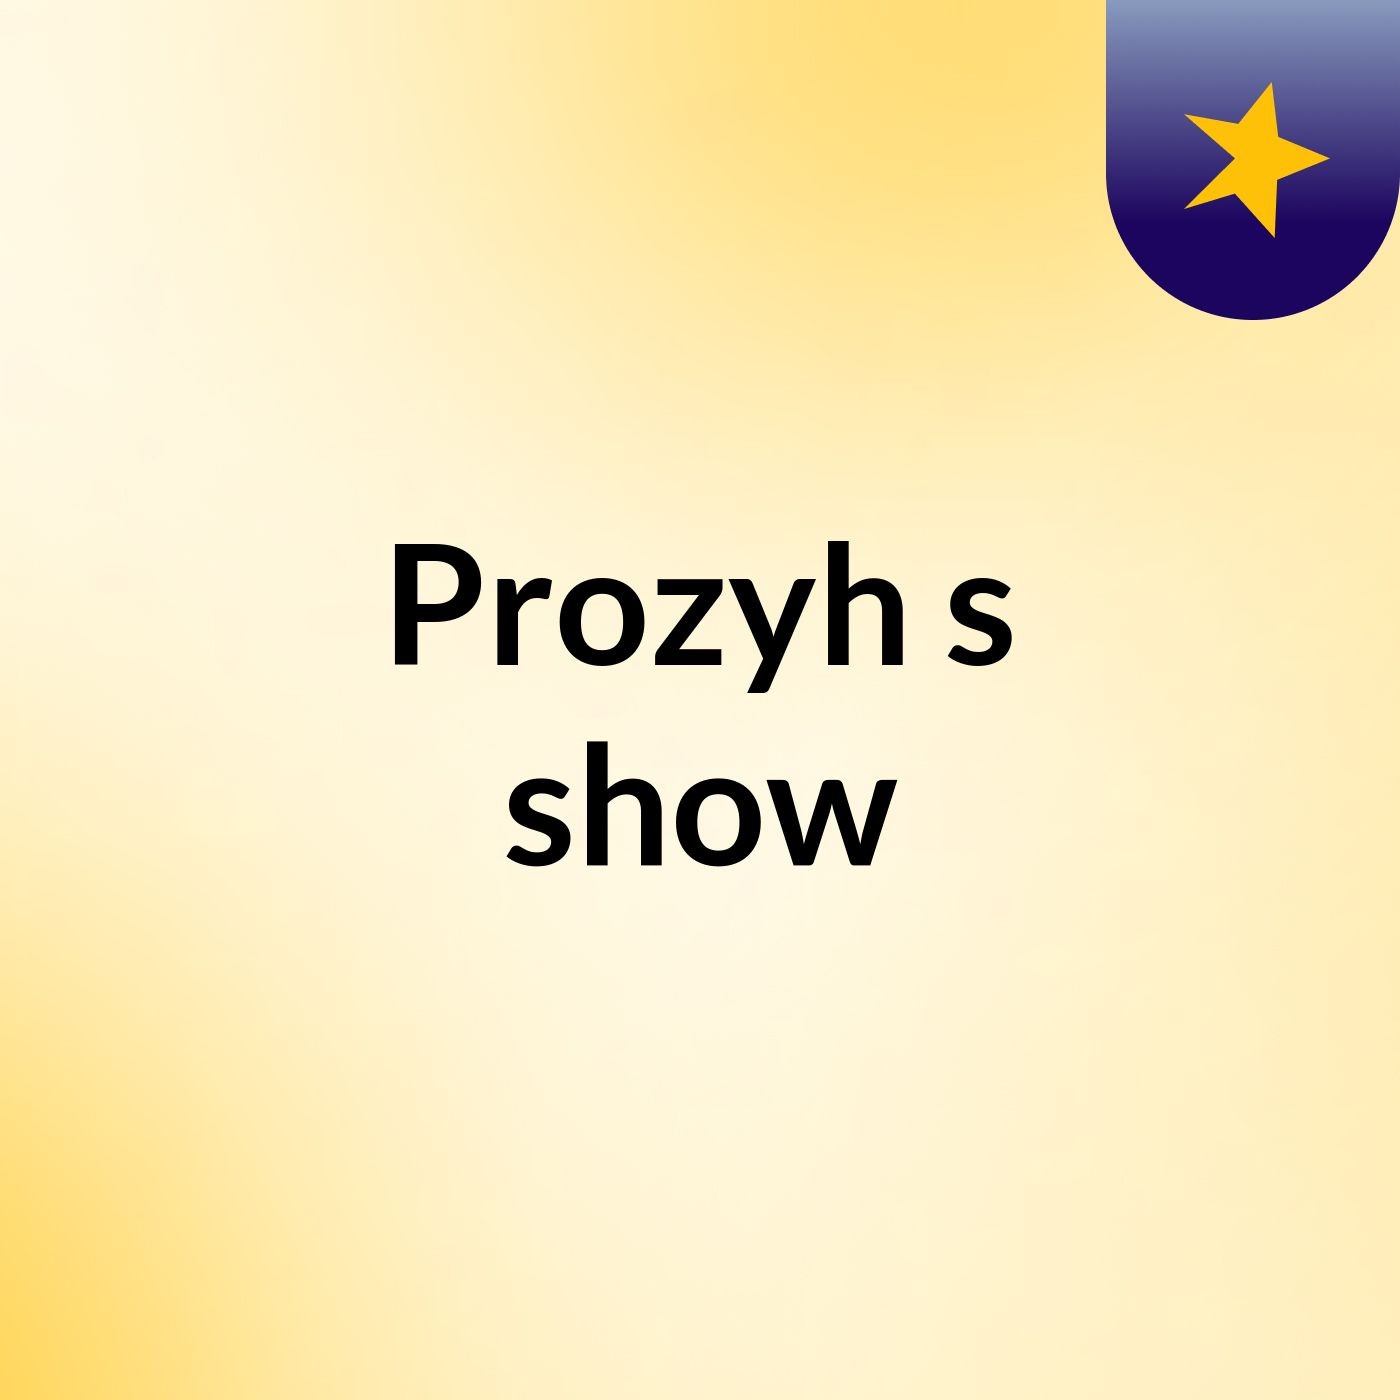 Prozyh's show